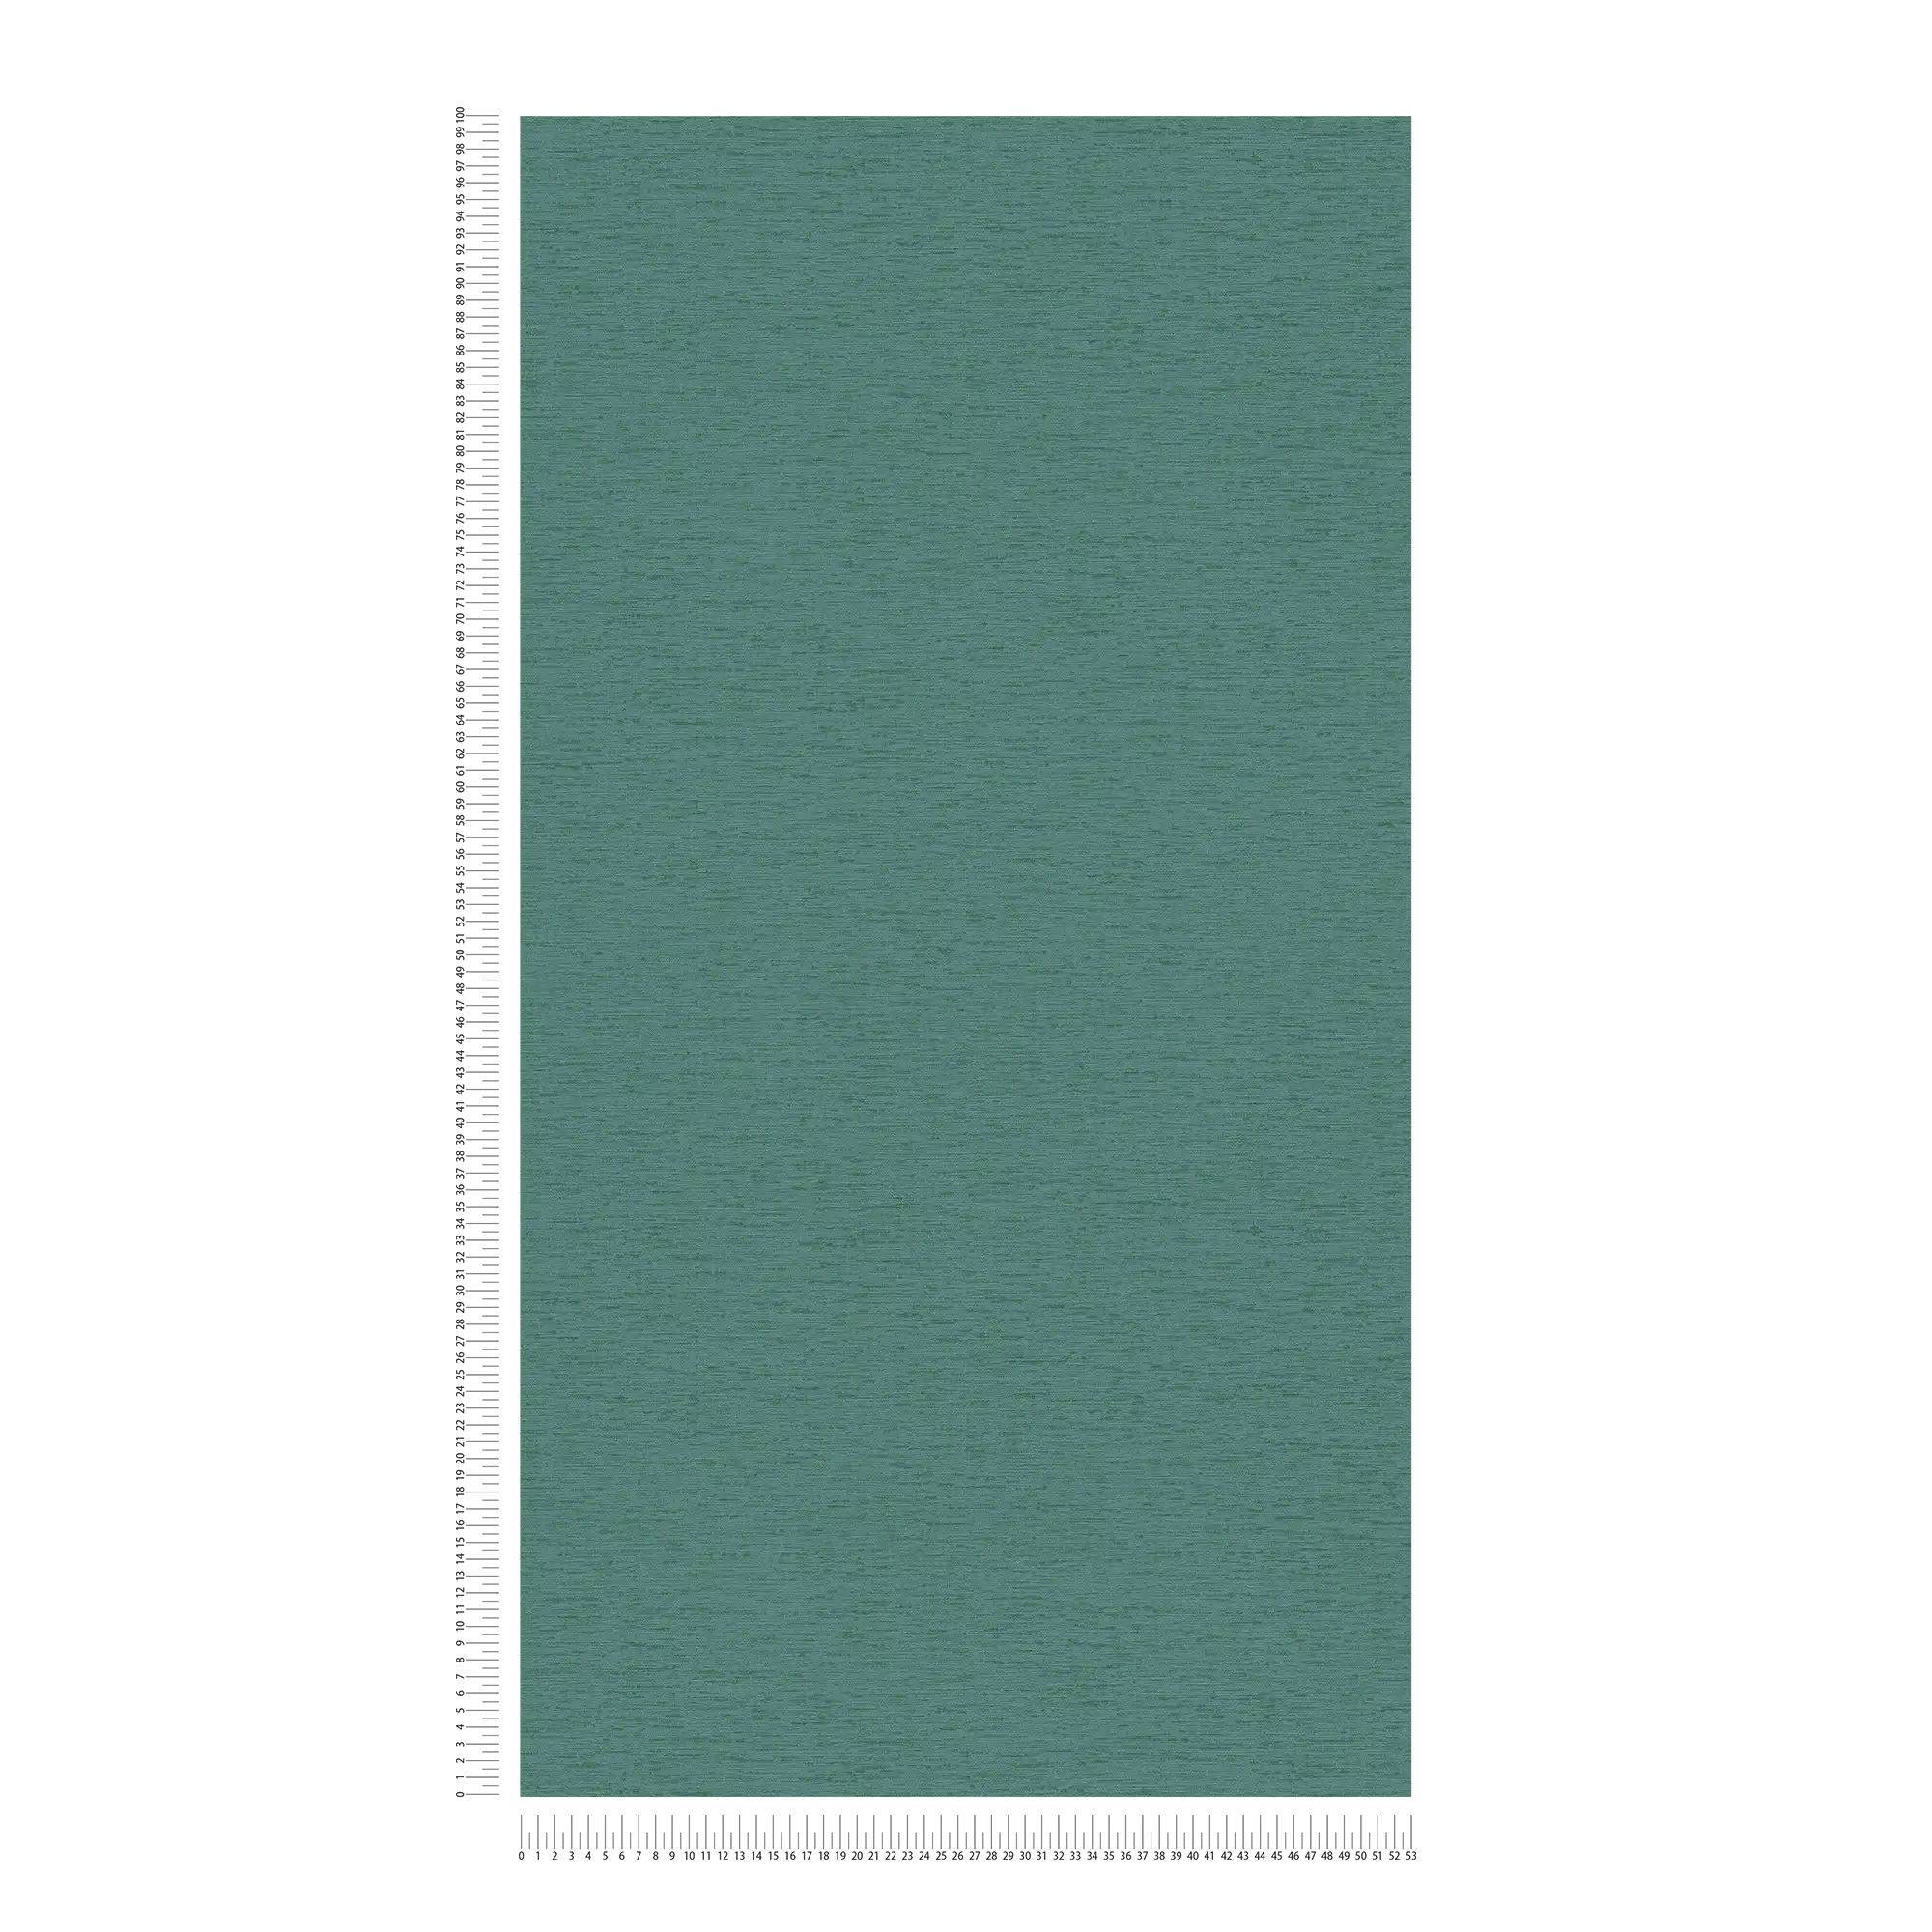             Plain non-woven wallpaper with fabric structure, matt - petrol, green
        